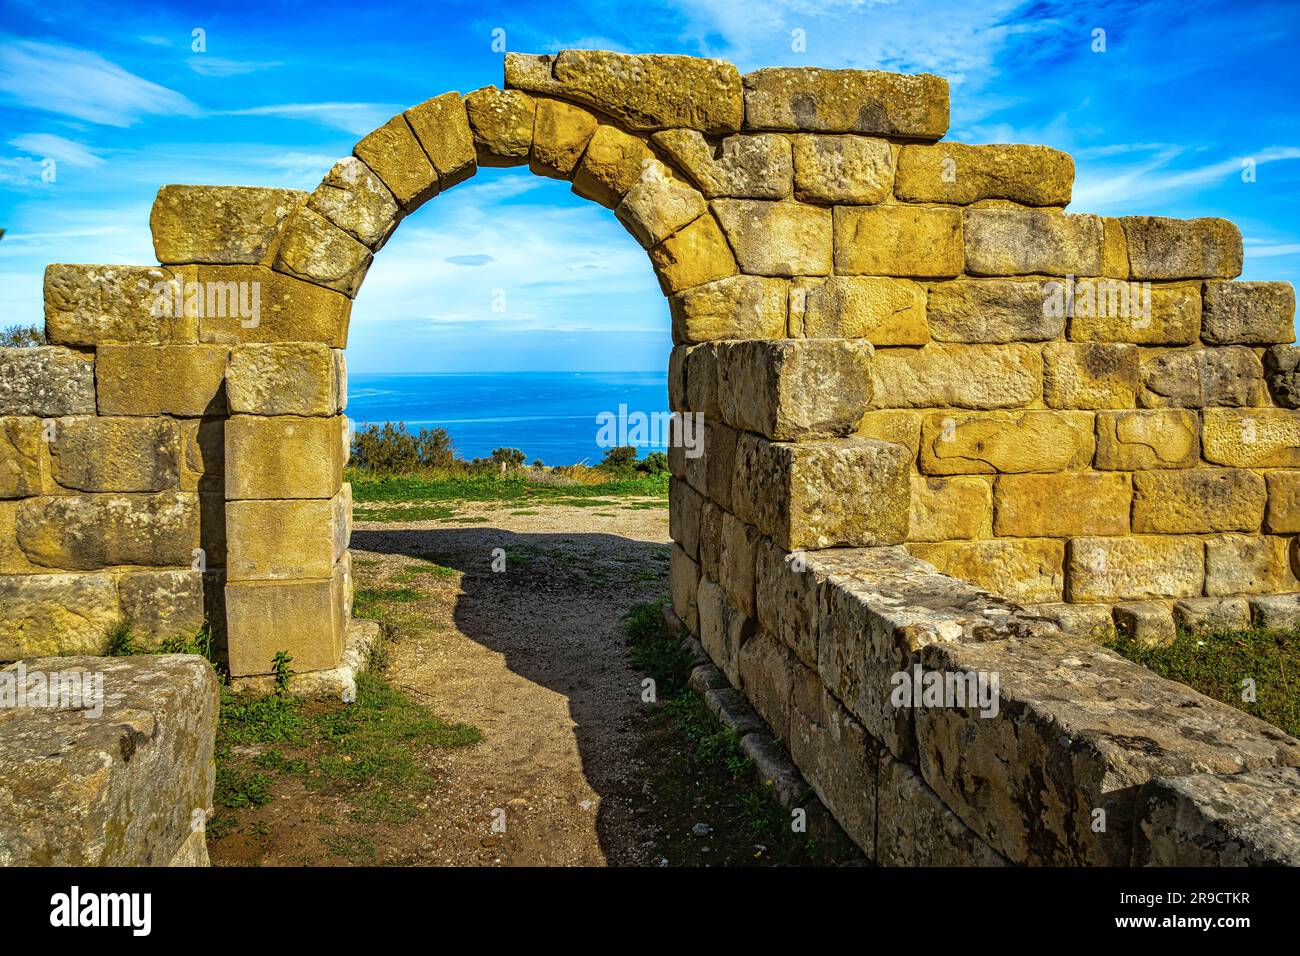 La mer de Sicile vue à travers l'arche d'accès au théâtre gréco-romain dans le parc archéologique de Tindari. Tindari, Patti, Sicile Banque D'Images